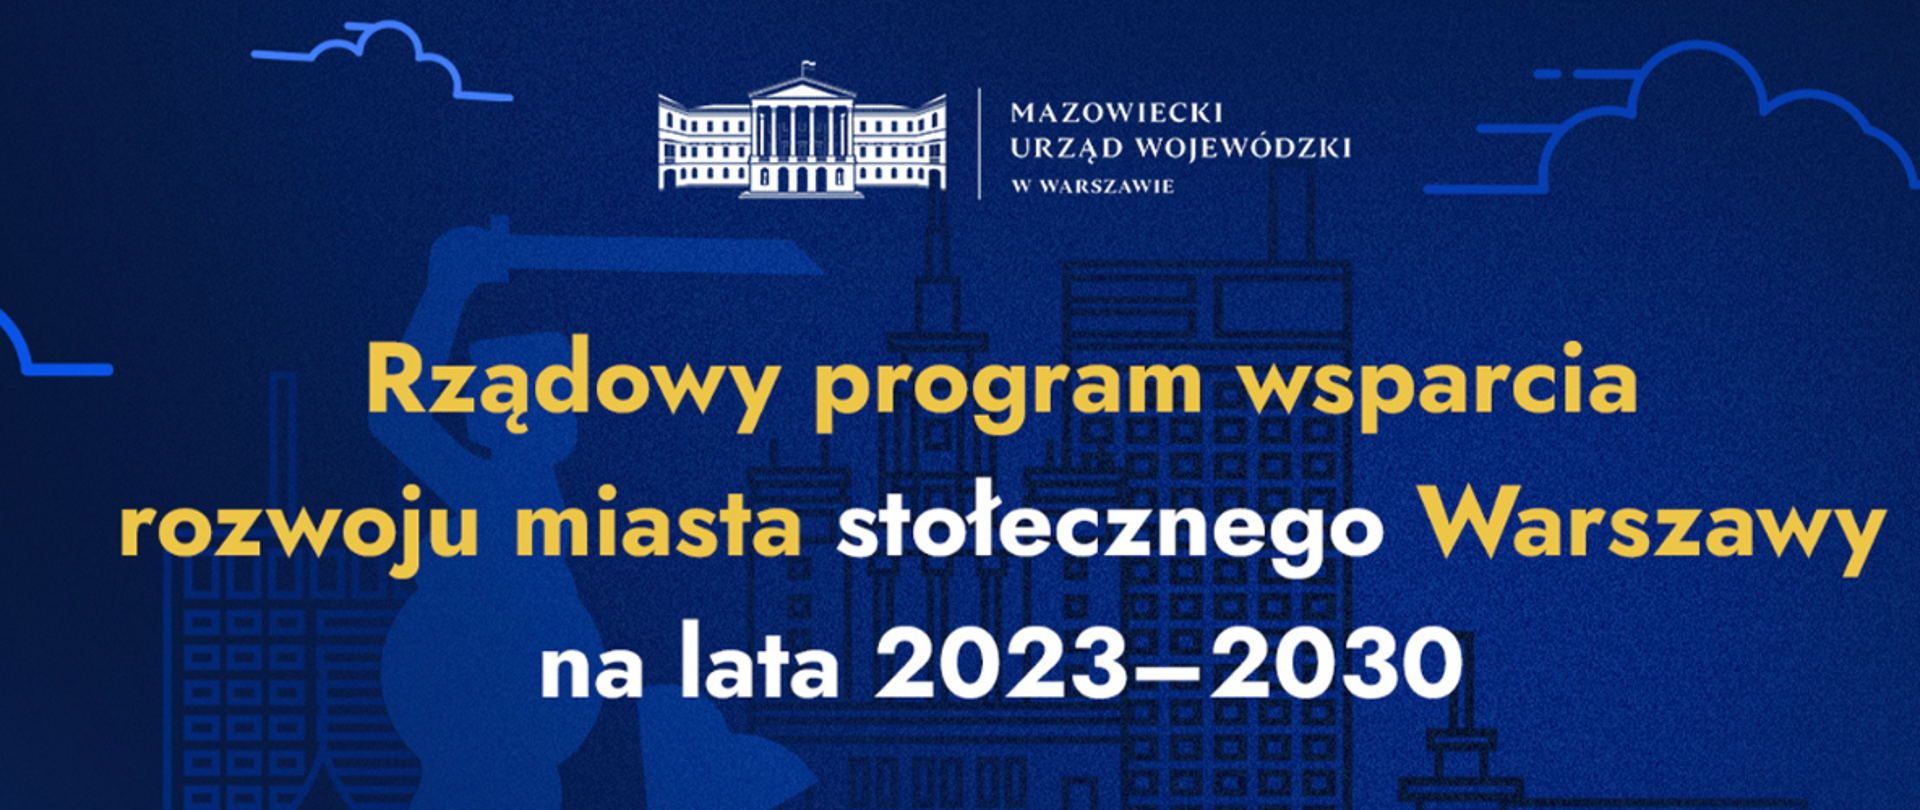 Rządowy program wsparcia rozwoju miasta stołecznego Warszawy na lata 2023-2030